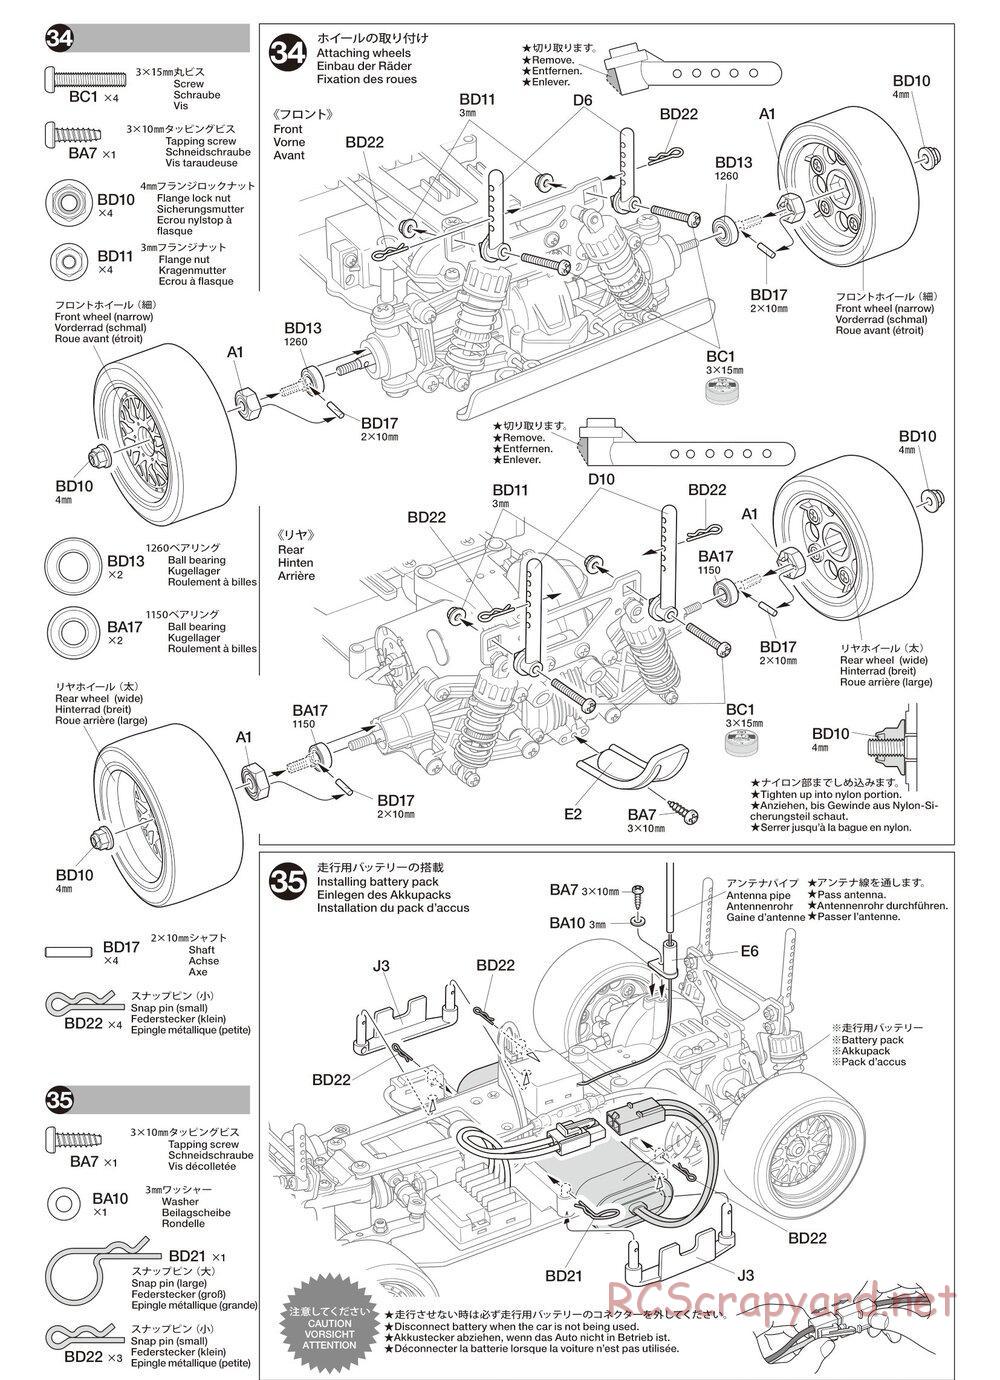 Tamiya - TA02SW Chassis - Manual - Page 17